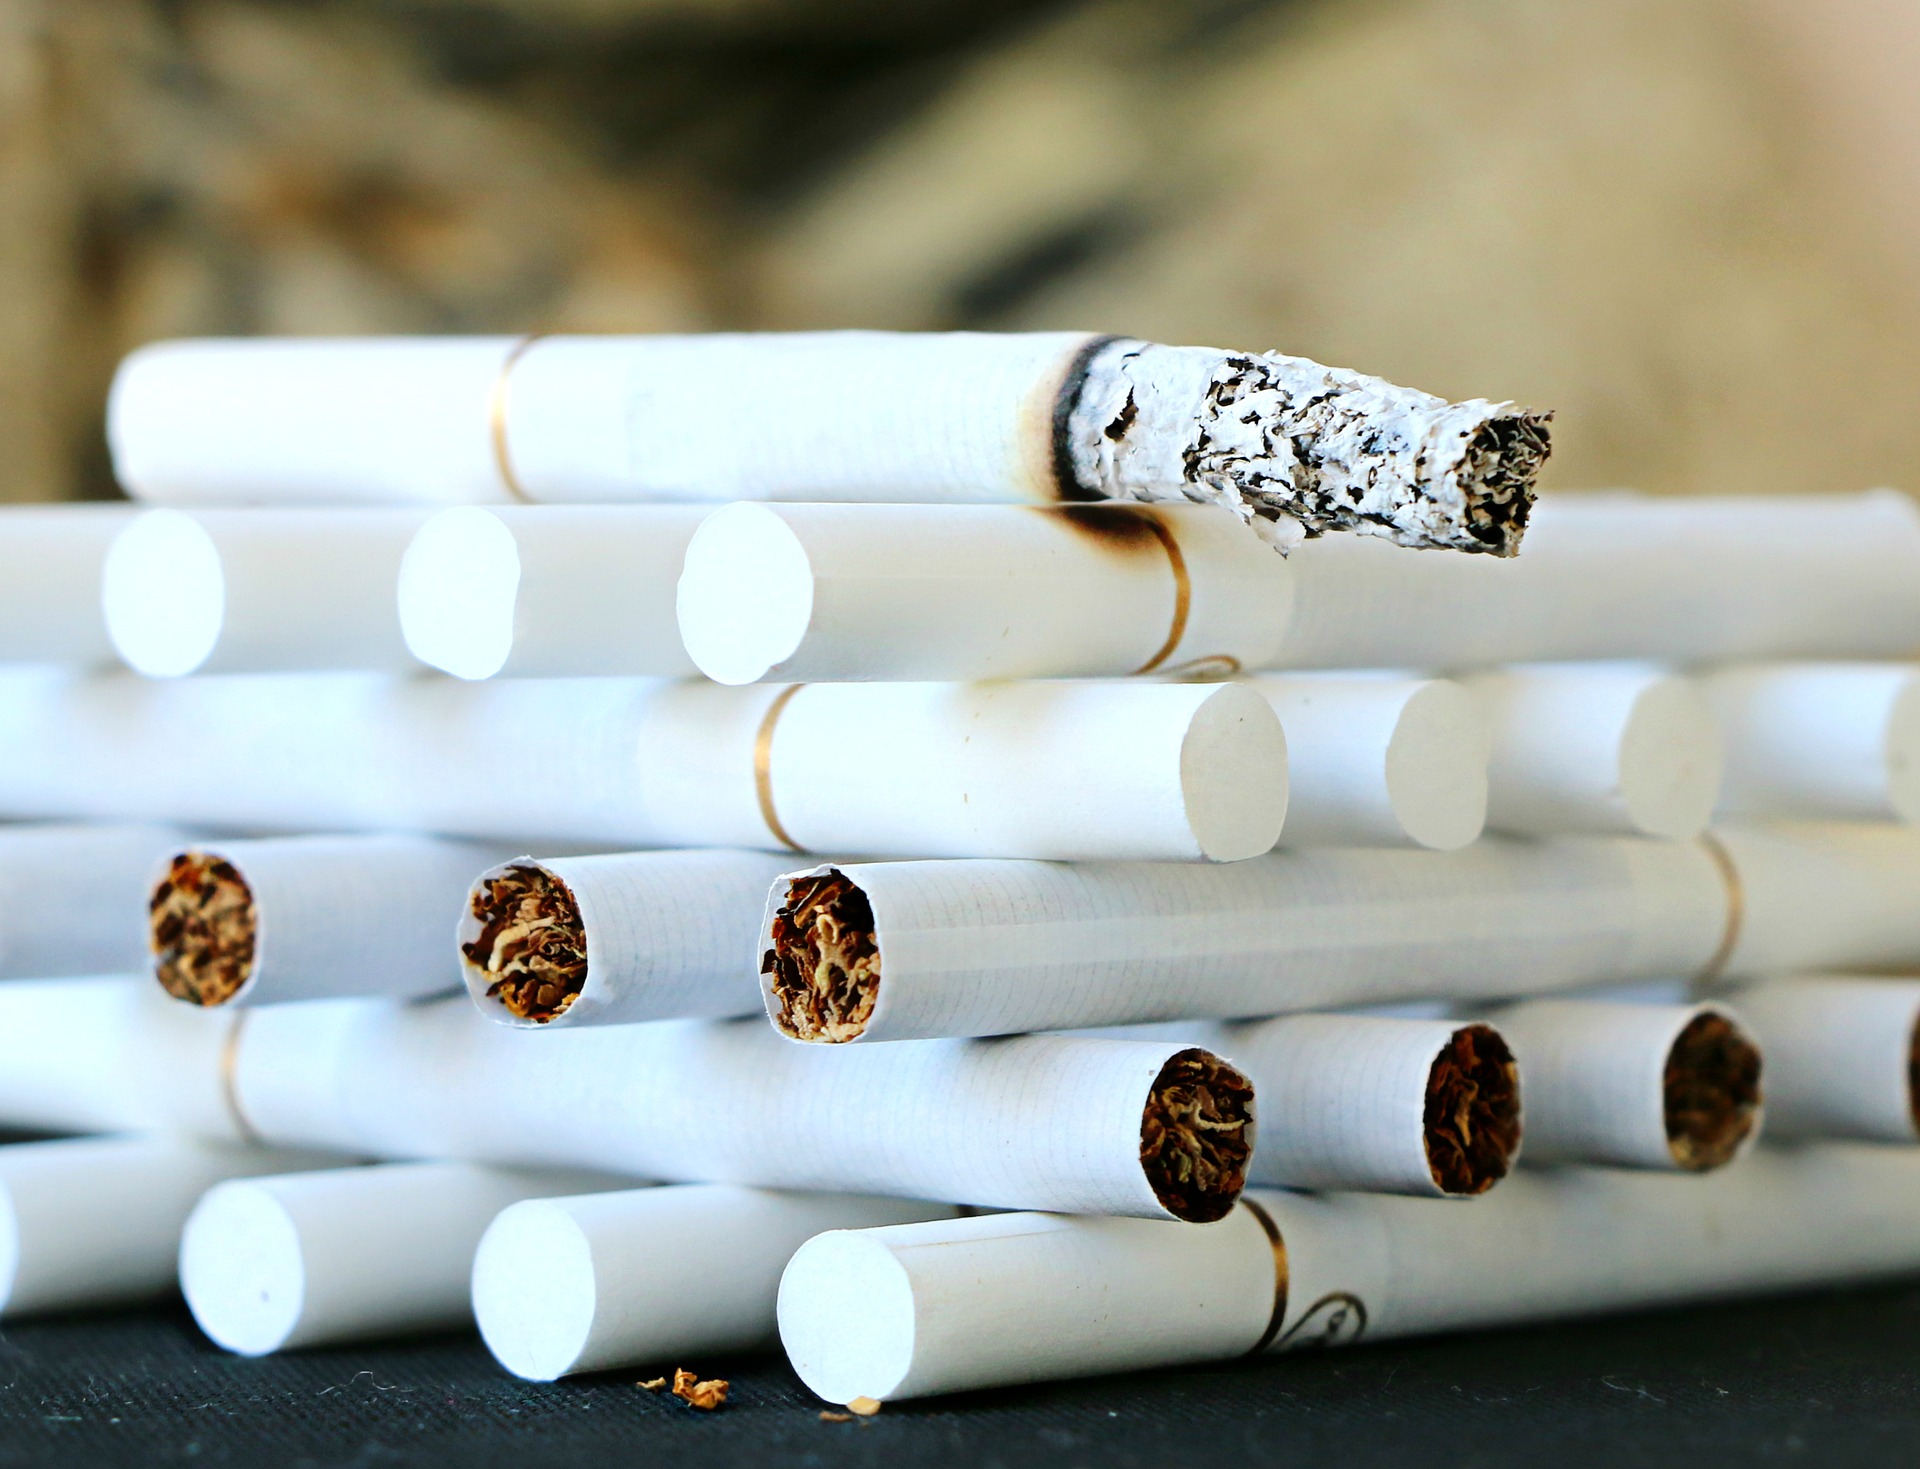 Tabac : 1,6 million de fumeurs quotidiens en moins depuis 2016 en France